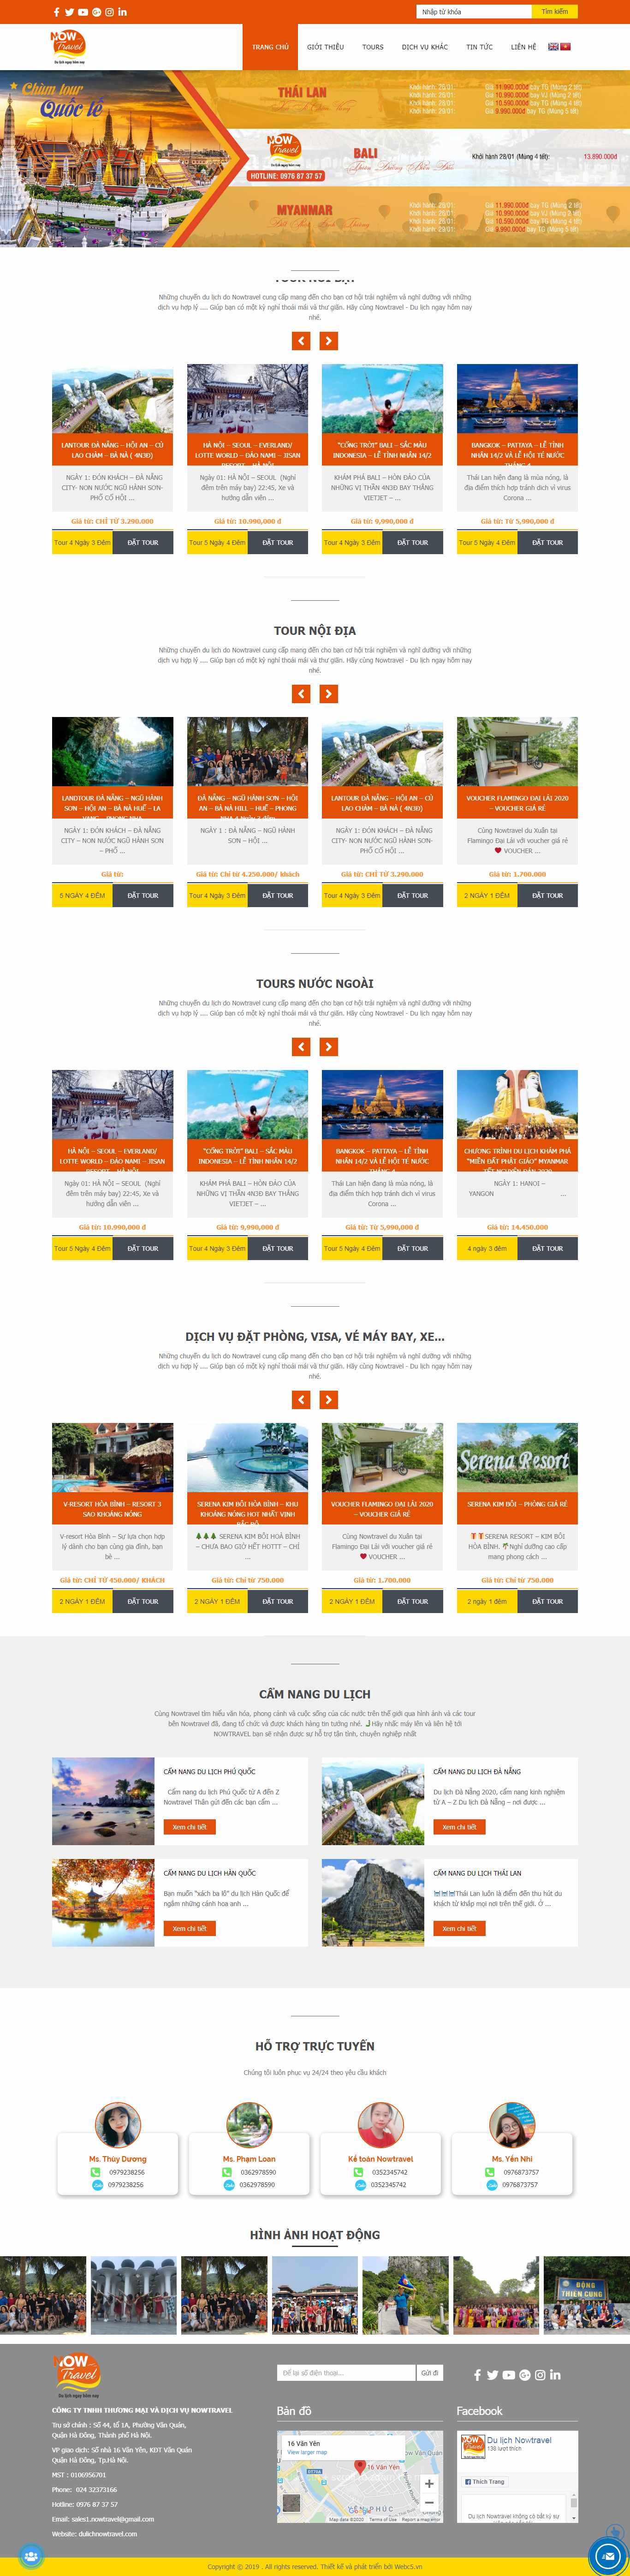 Thiết kế Website resort - khu nghỉ dưỡng - dulichnowtravel.com